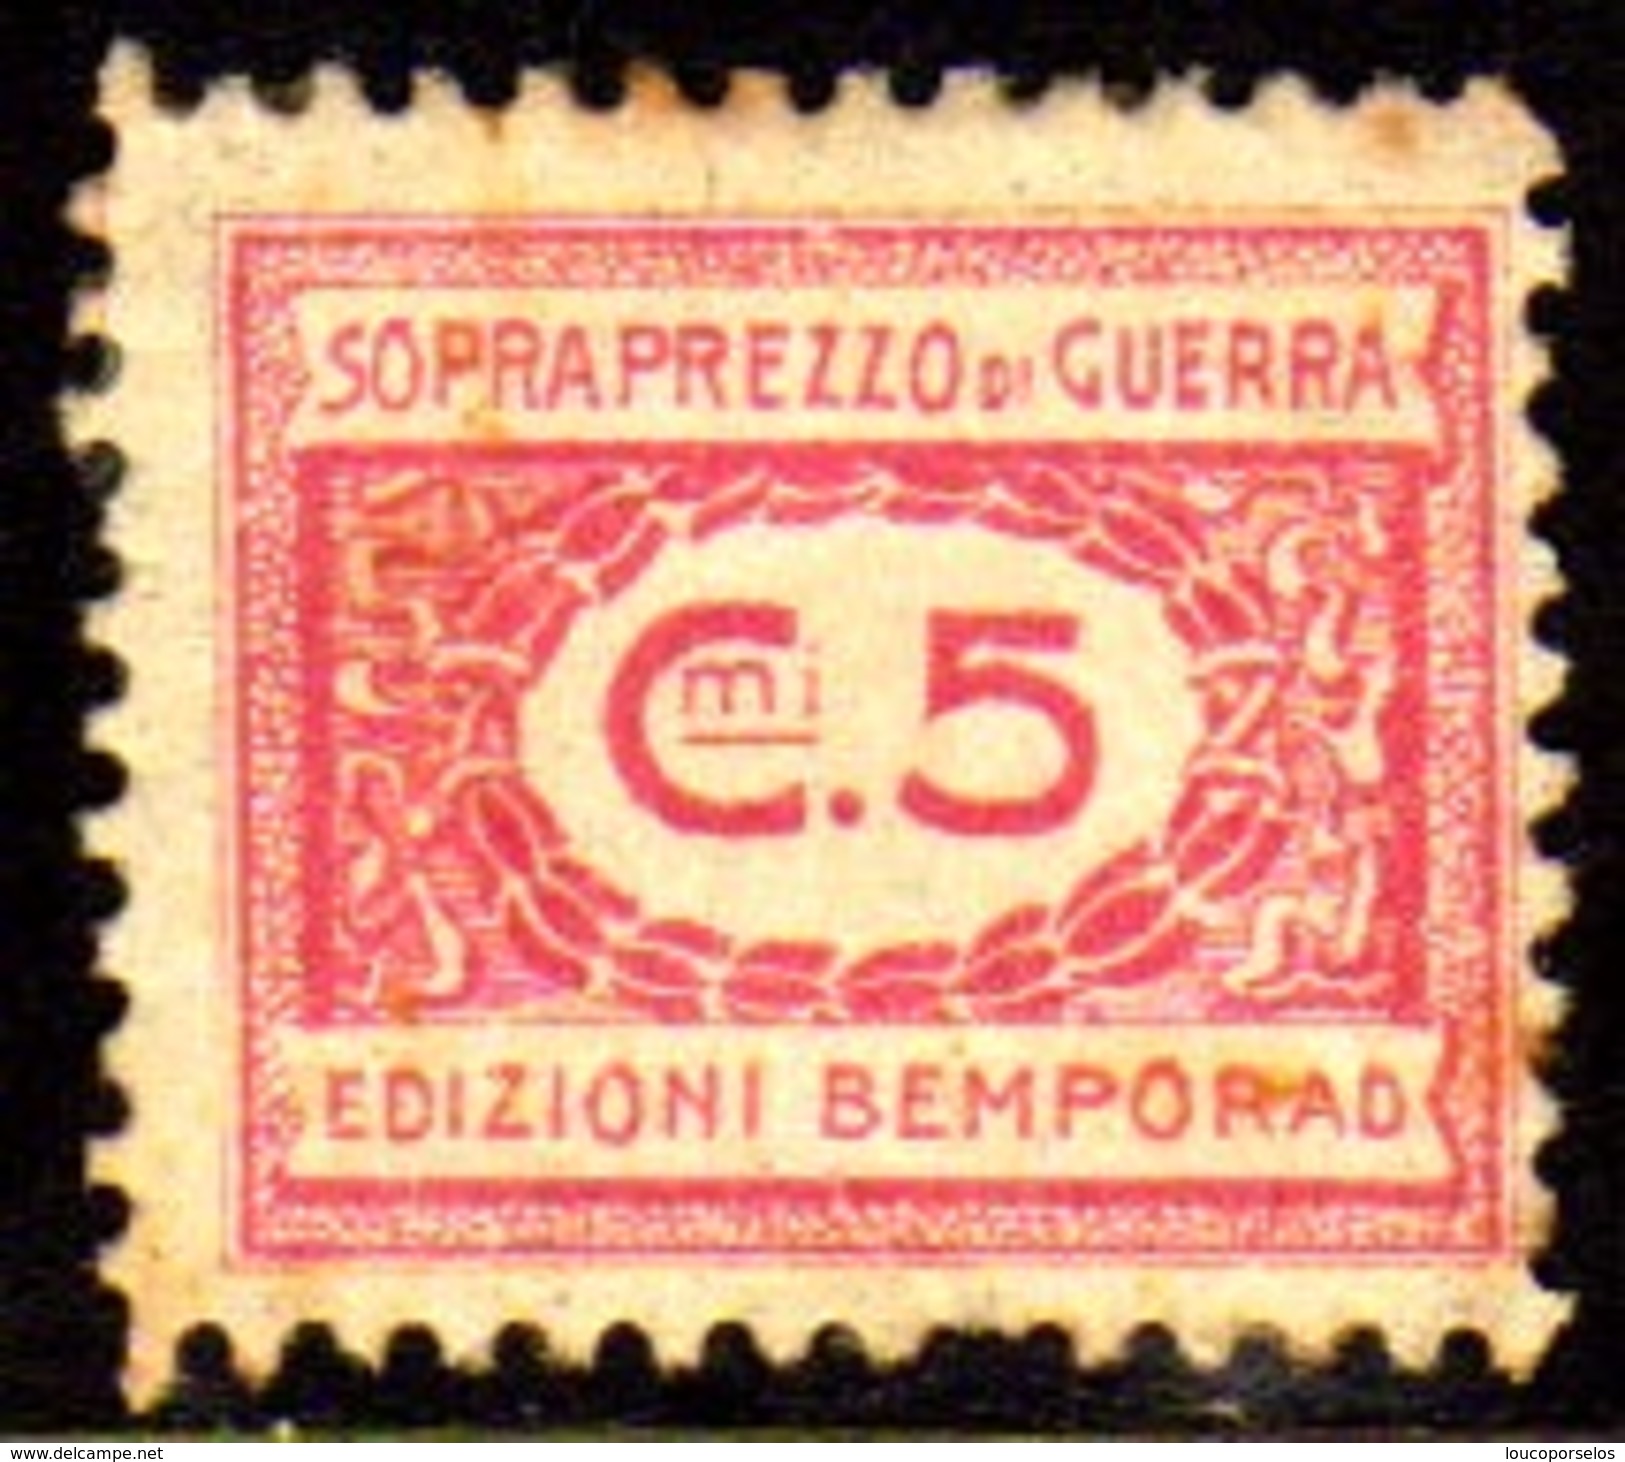 10535 Italia Selos De Sobrepreço De Guerra 5 Cts N (a) - Revenue Stamps